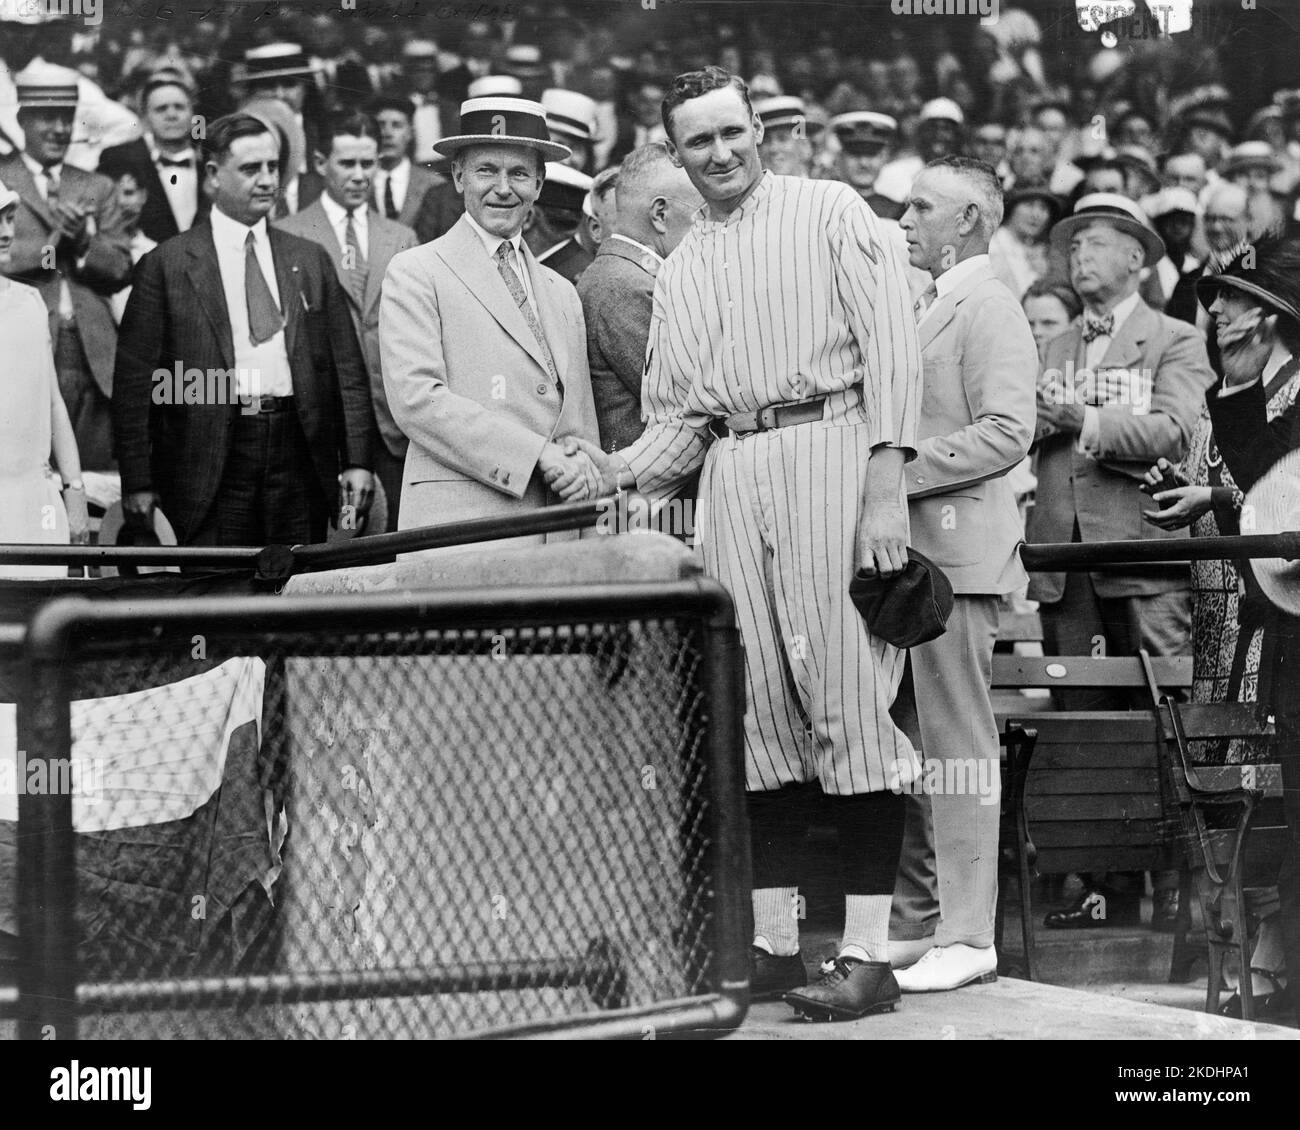 Le président Calvin Coolidge se tremble avec le légendaire lanceur des sénateurs de Washington Walter Johnson au Griffith Stadium le 18 juin 1925 Banque D'Images